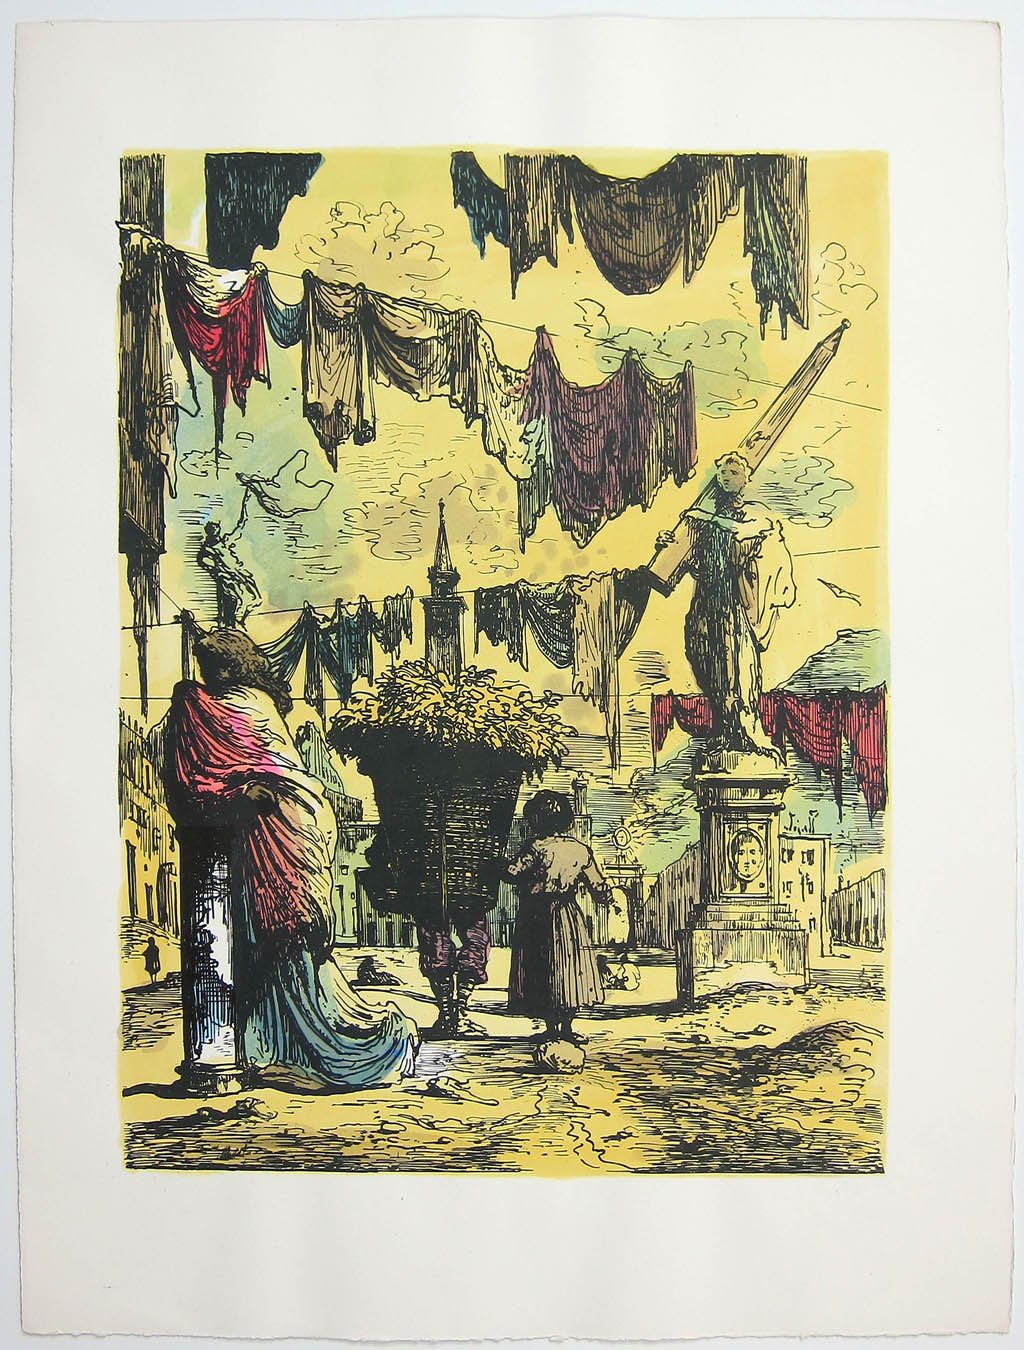 Eugene Berman - Viaggio in Italia - color lithograph - 1951 portfolio of lithographs and text